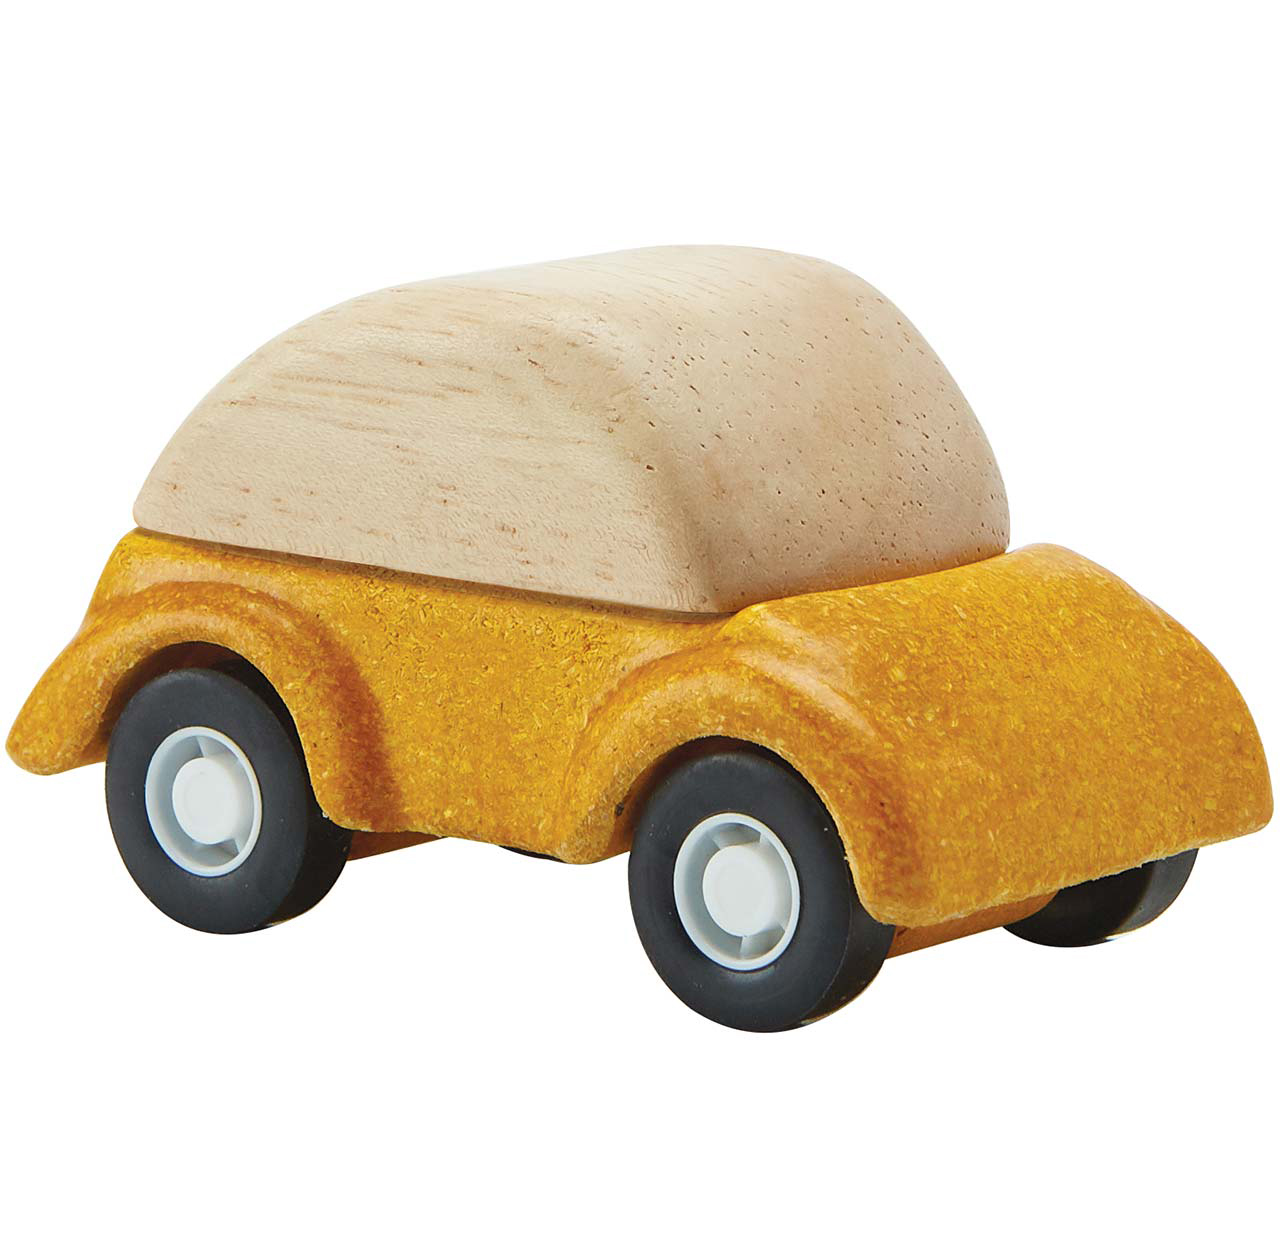 Spielzeug Auto aus Holz ab 3 Jahren gelb - 6 cm lang